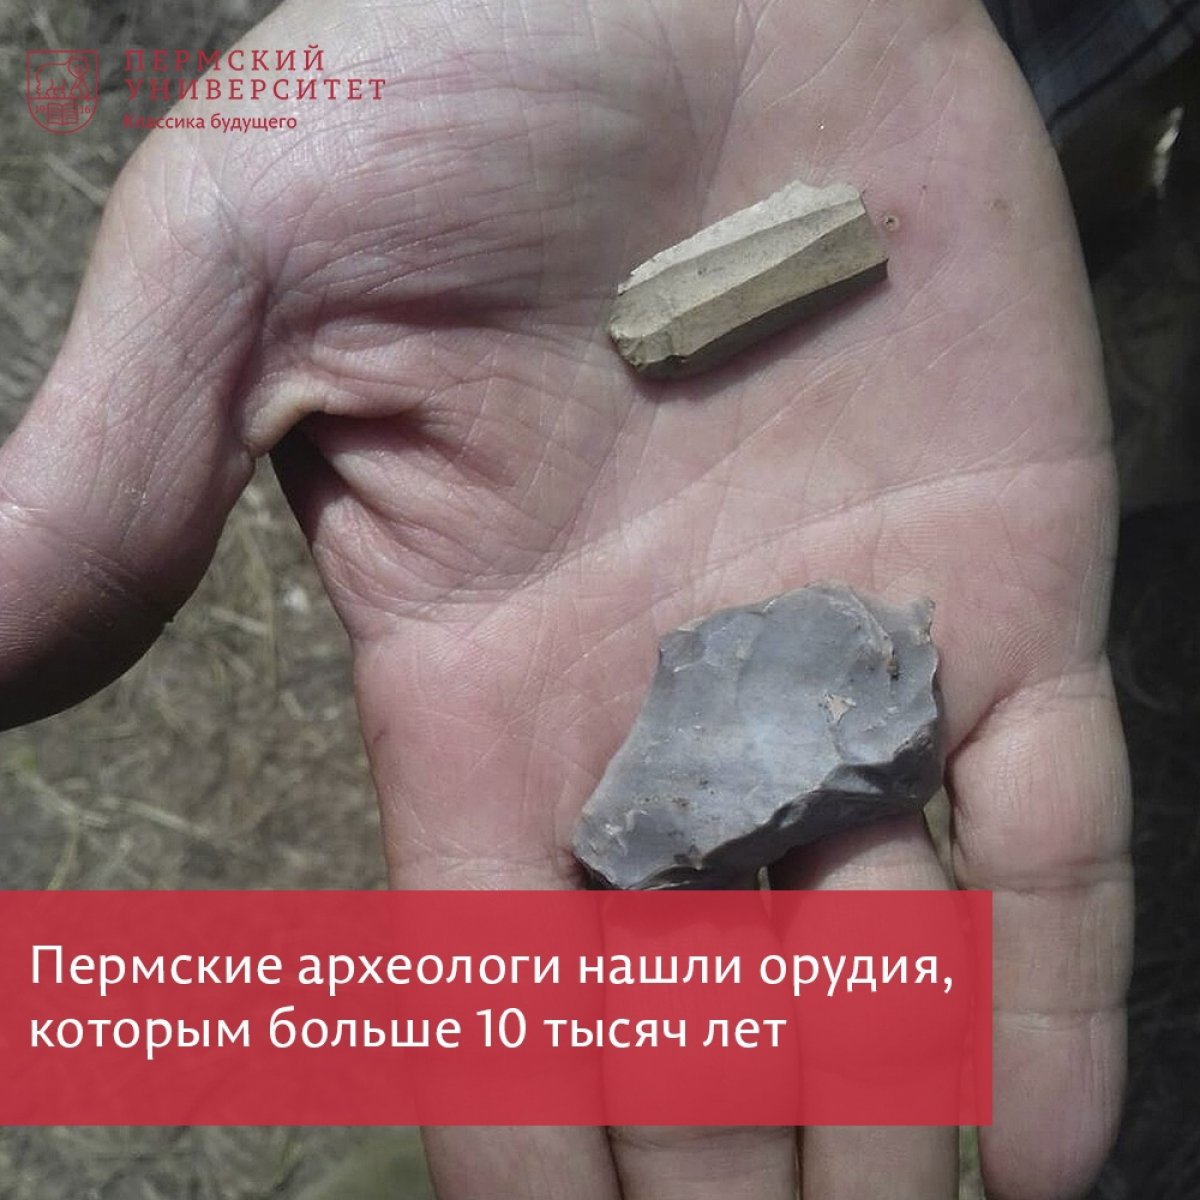 В Осинском районе нашли следы пребывания древнего человека, жившего в Каменном веке